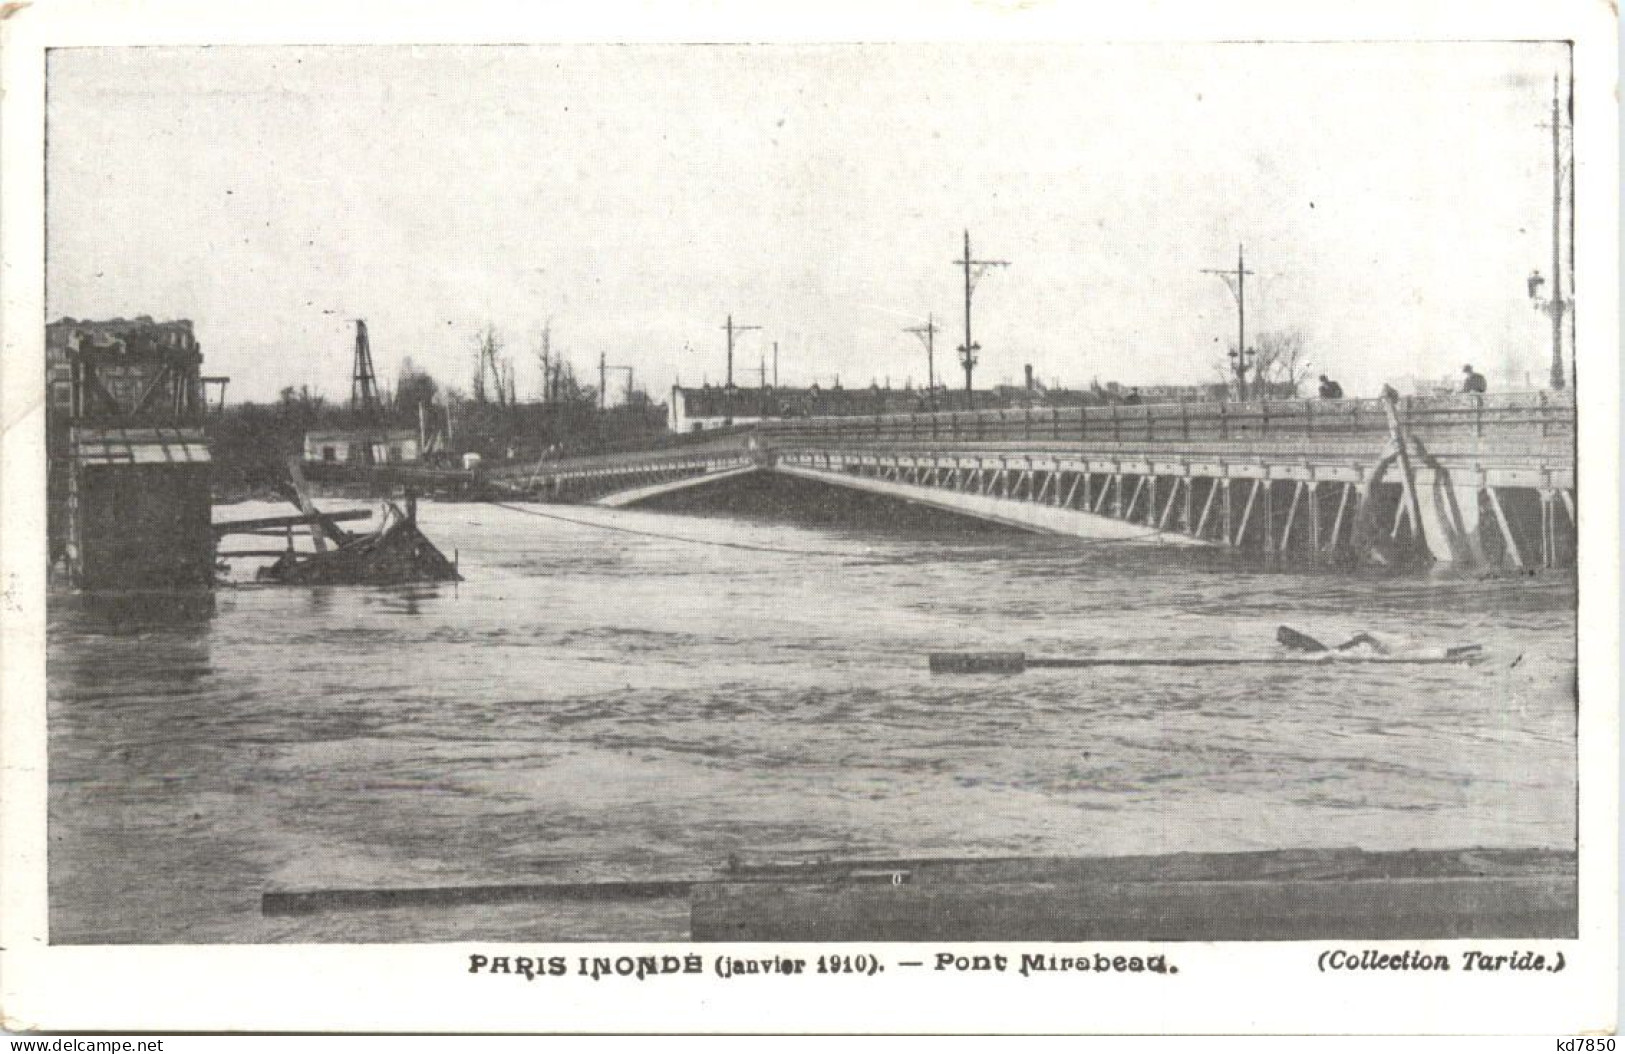 Paris Inonde 1910 - Paris Flood, 1910